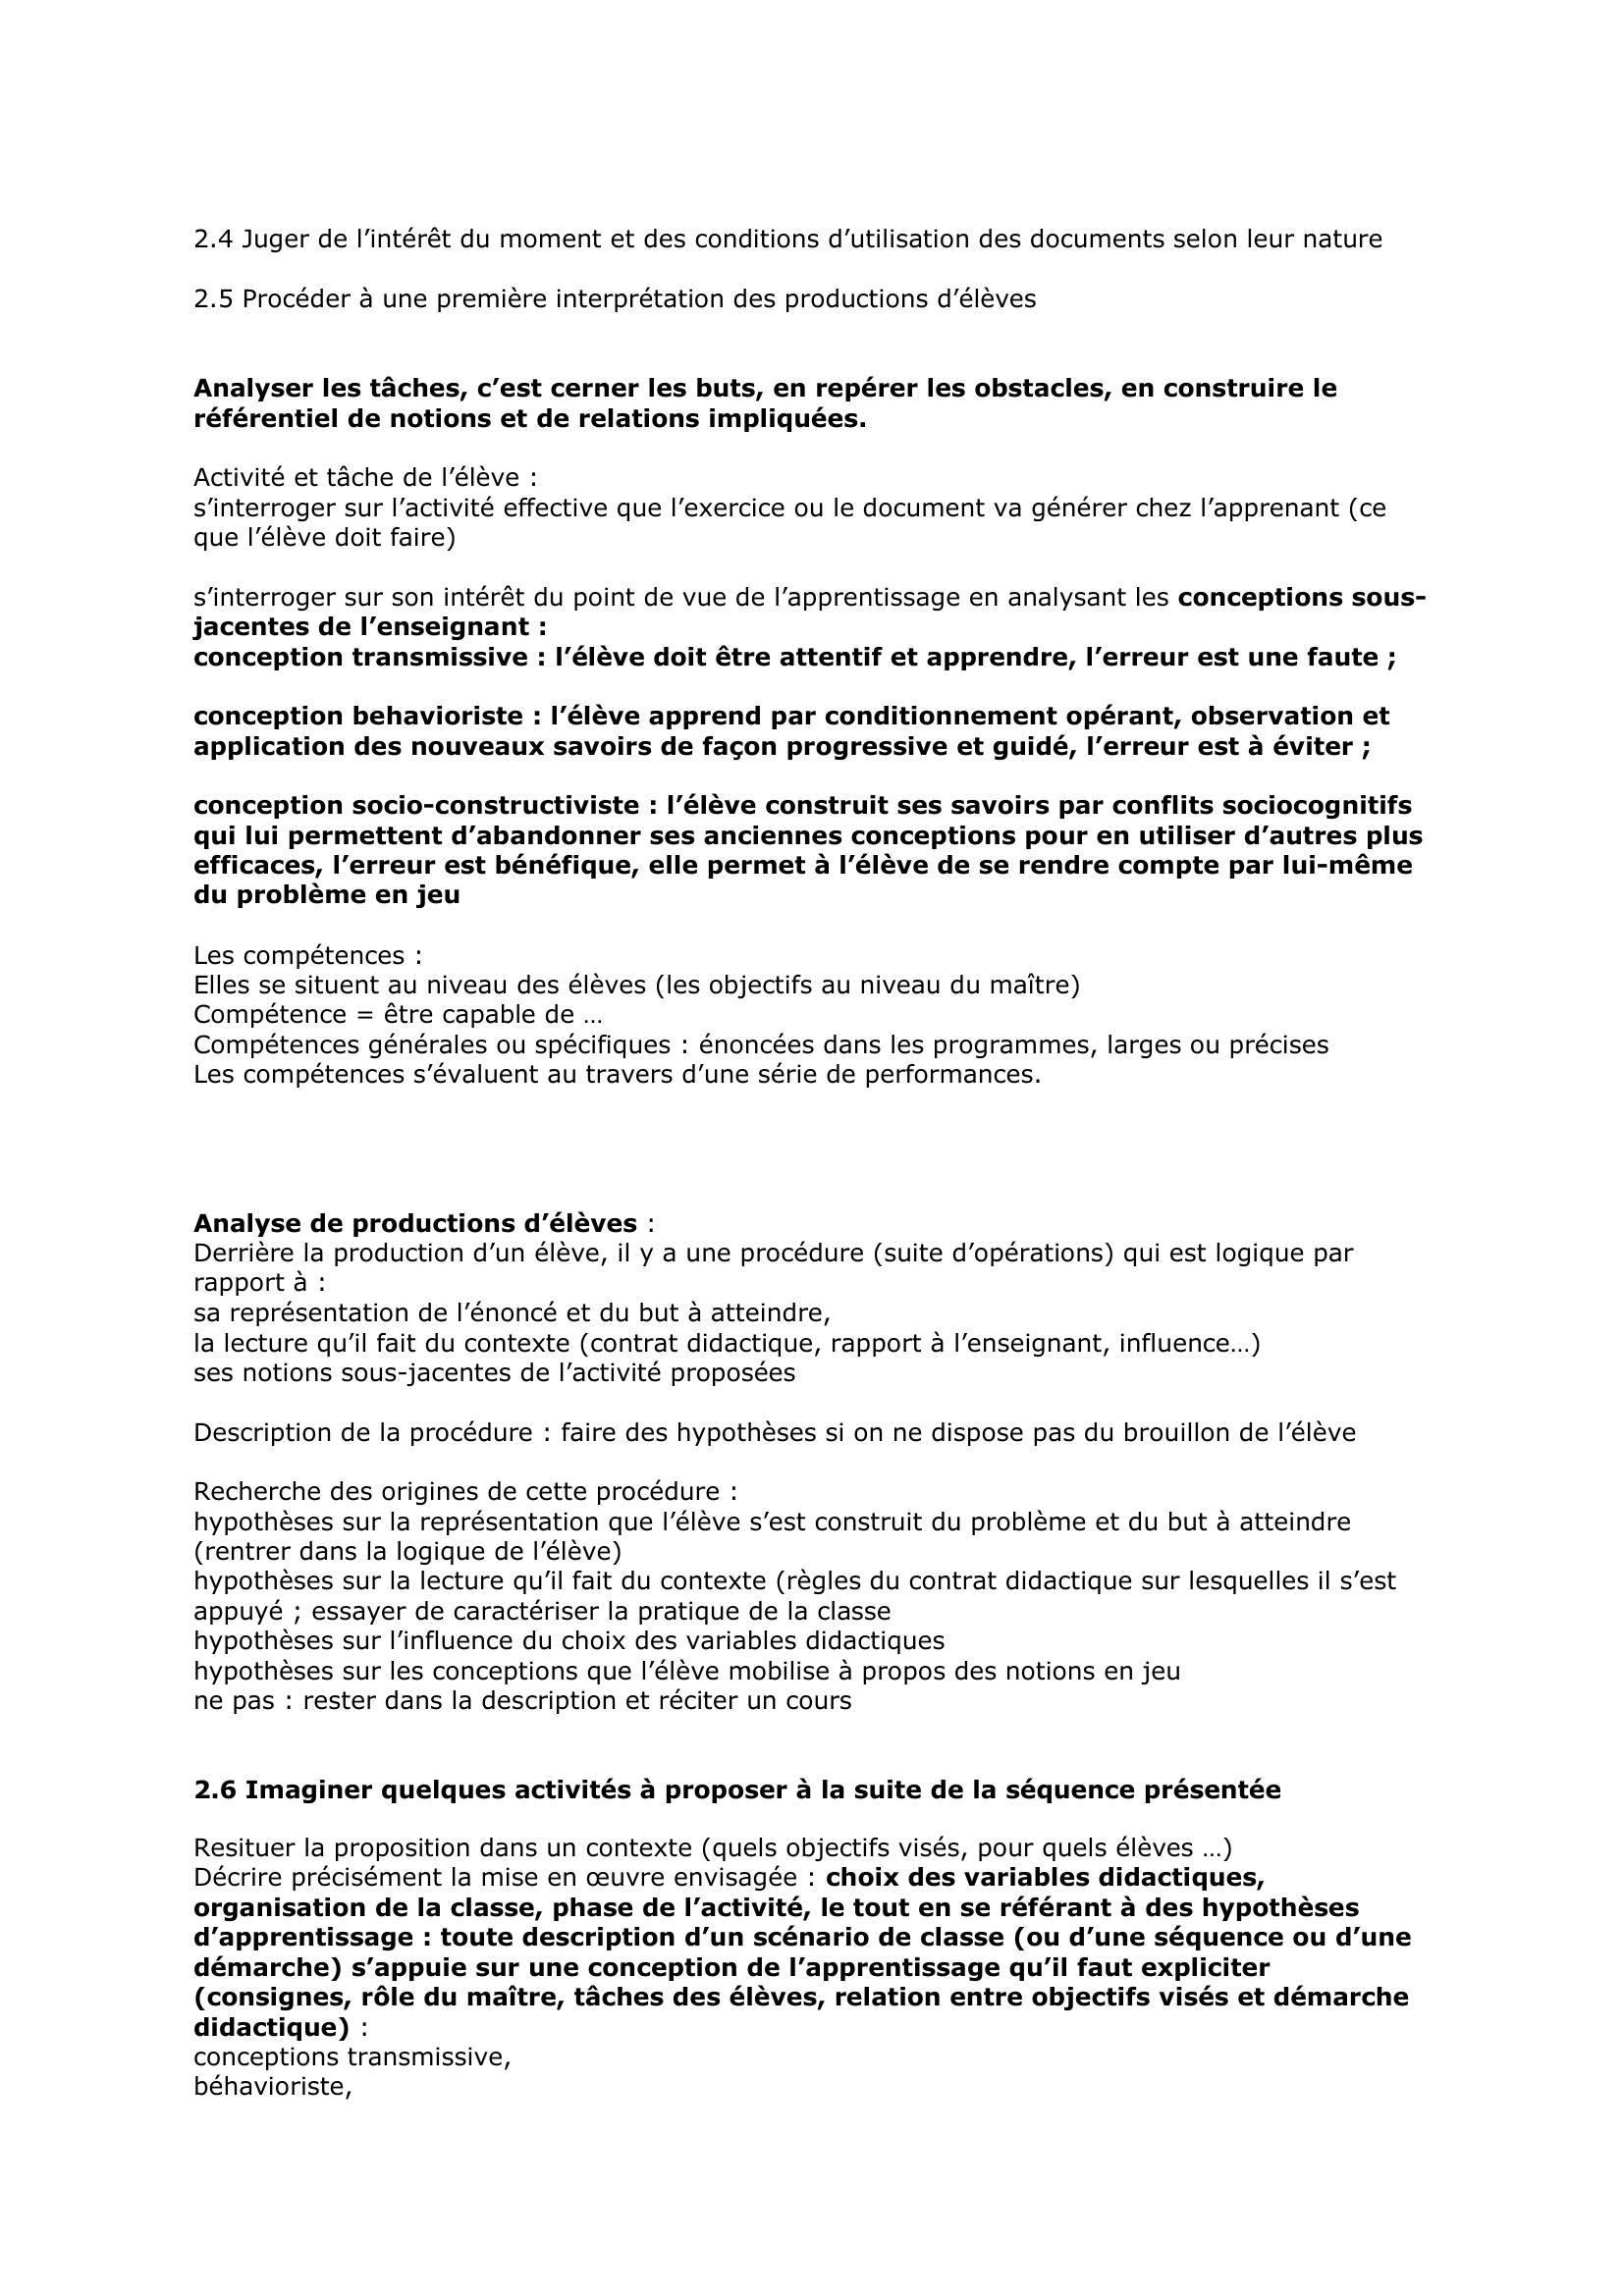 Prévisualisation du document LA PARTIE DIDACTIQUE

Fiche construite par sylvain
Sylvain.